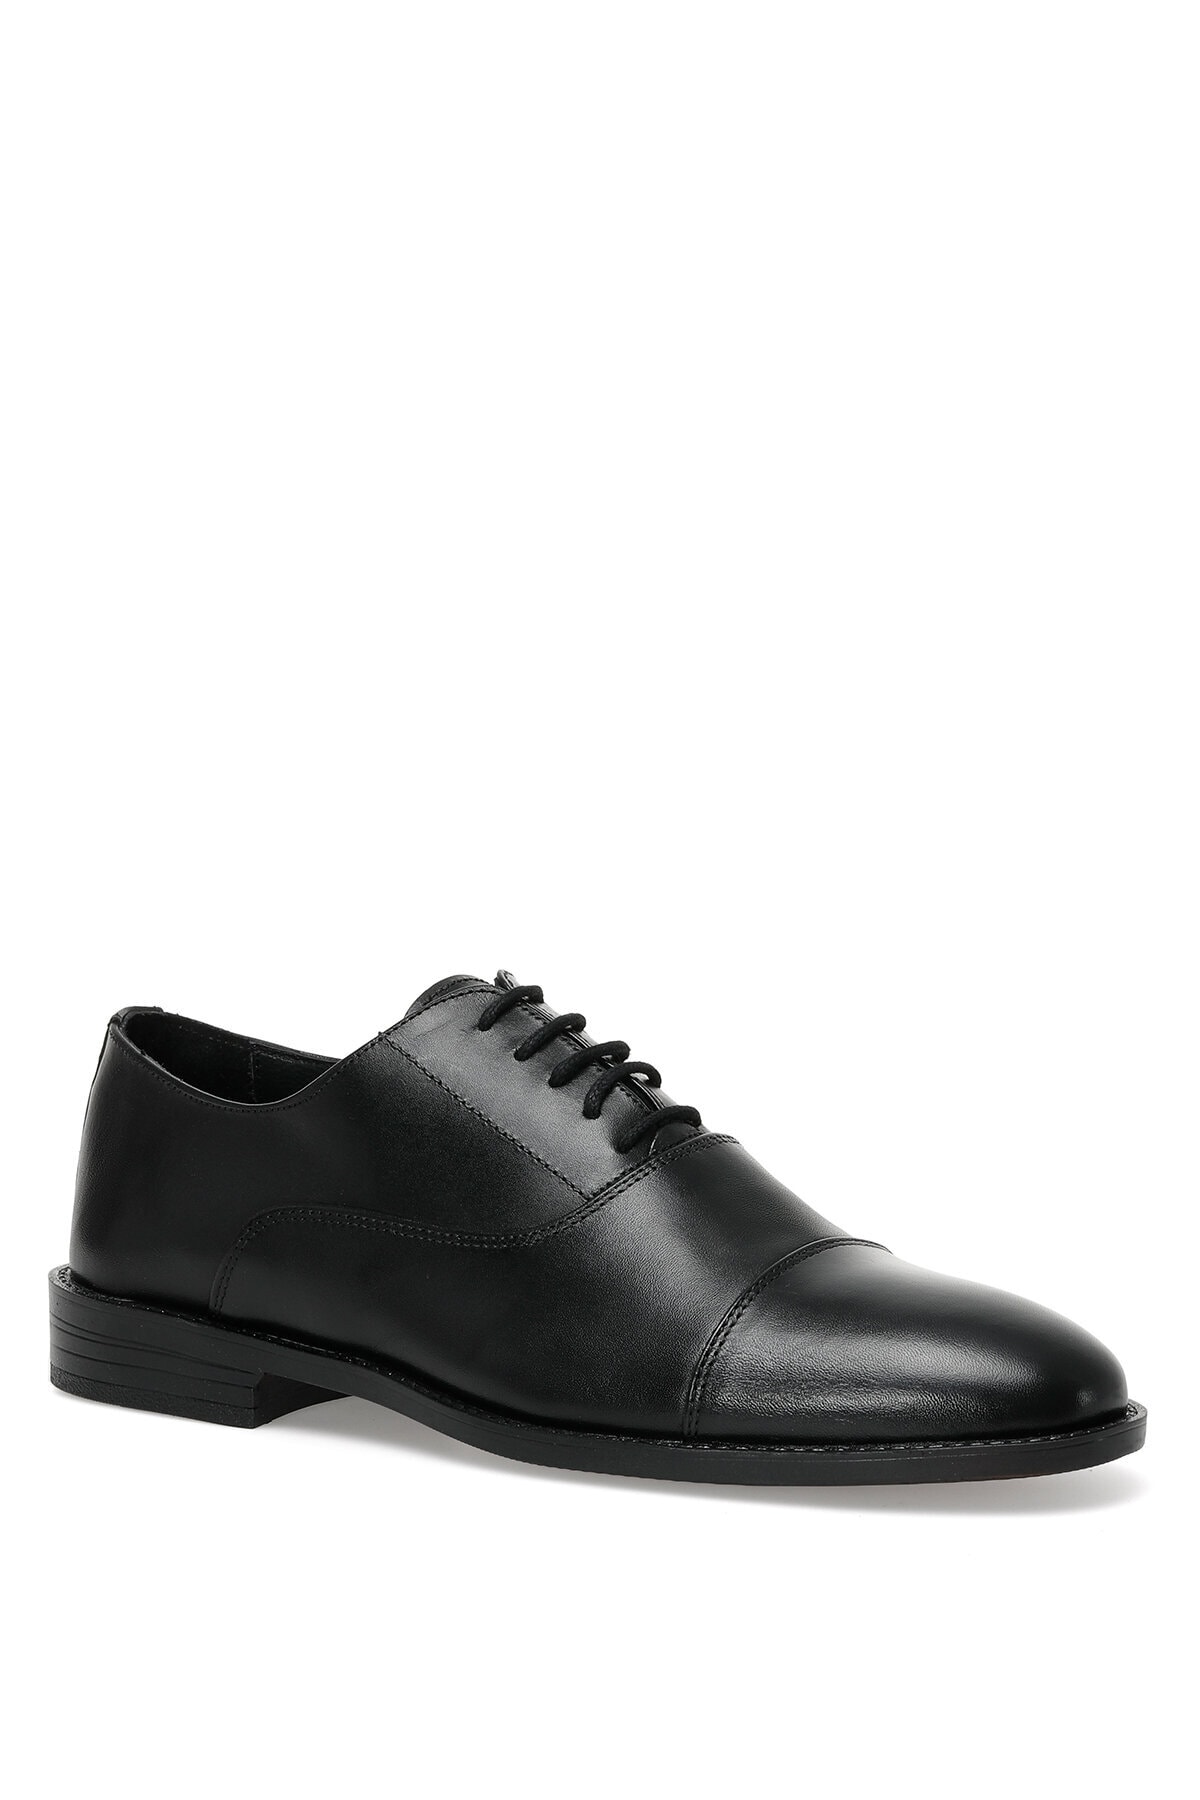 İnci Kame 2pr Siyah Erkek Klasik Ayakkabı